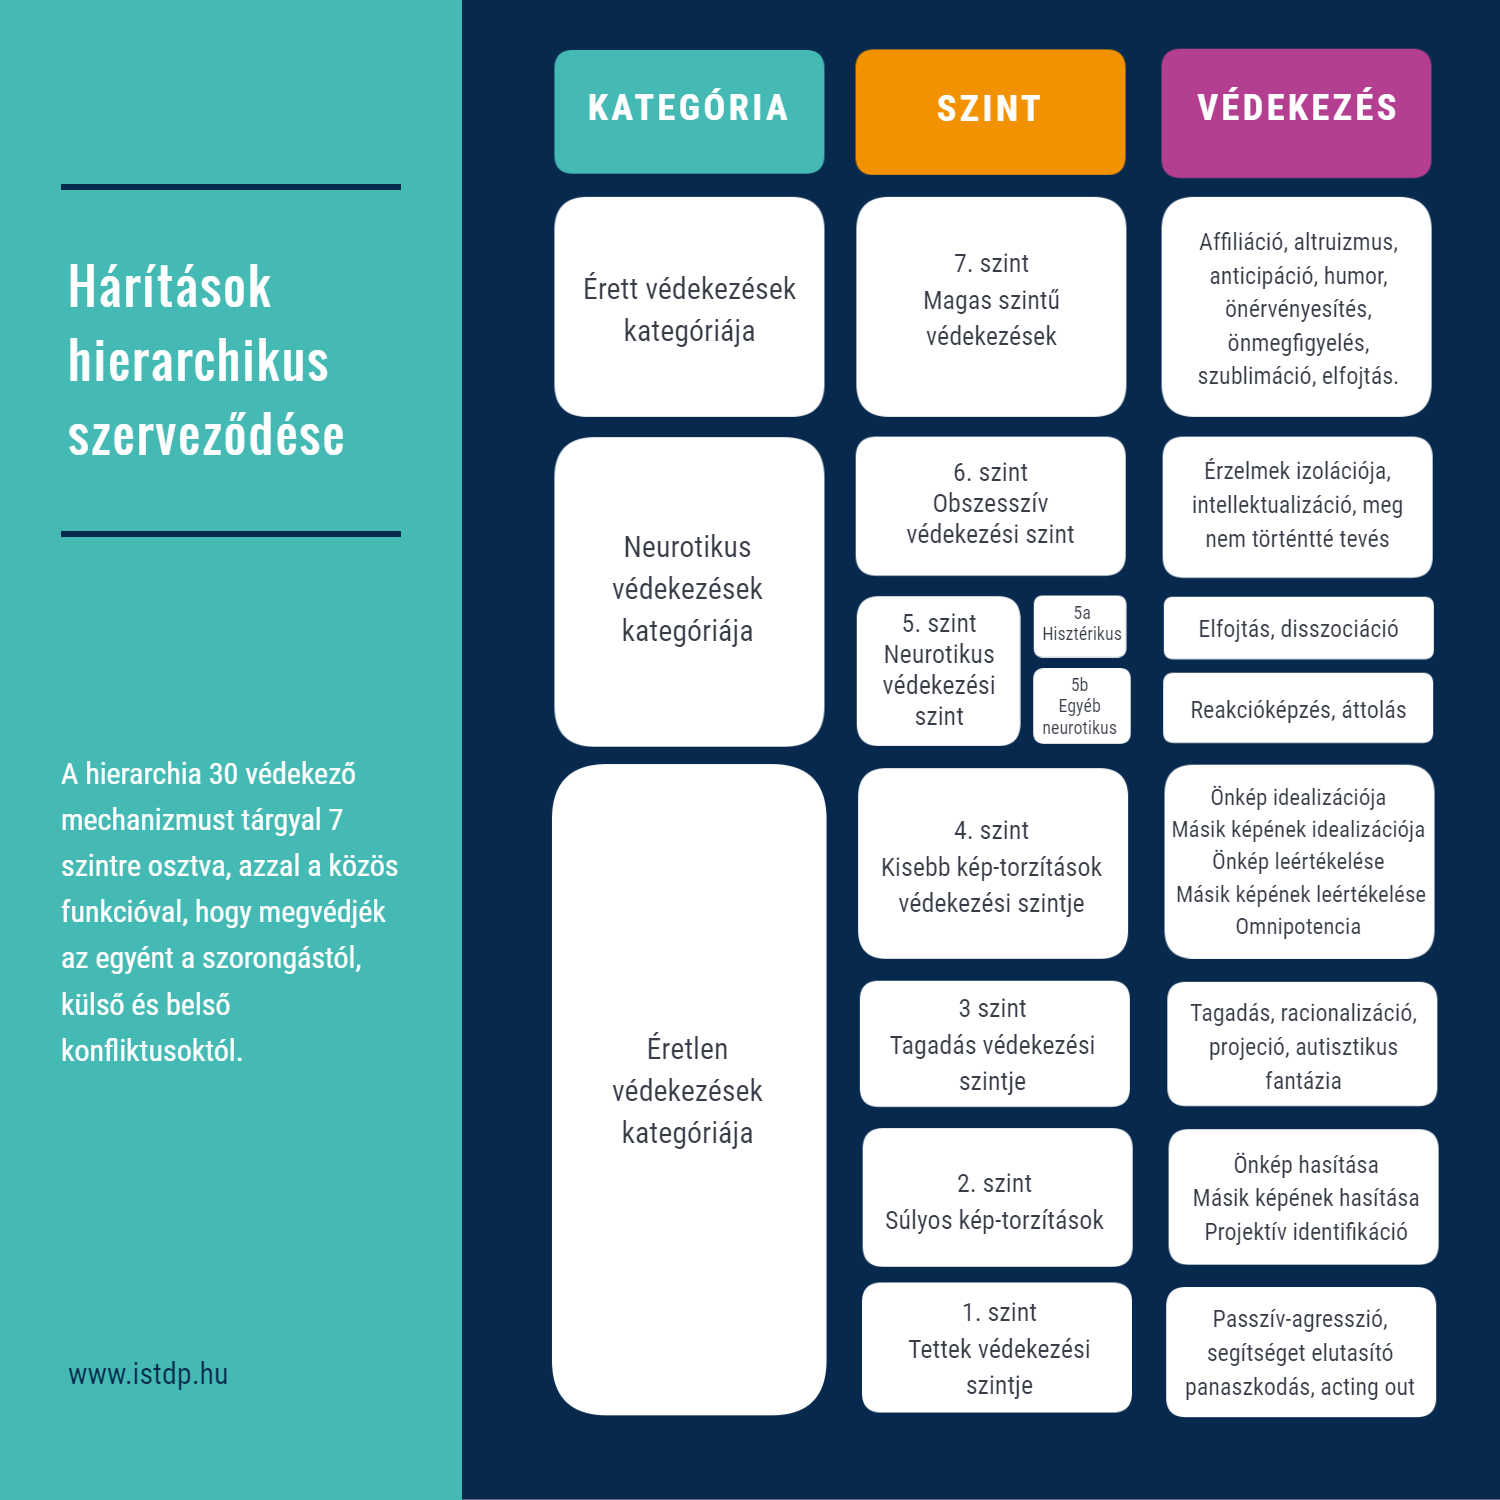 Elhárító mechanizmusok hierarchiája | A táblázat adaptációjának forrása https://doi.org/10.3389/fpsyg.2021.718440